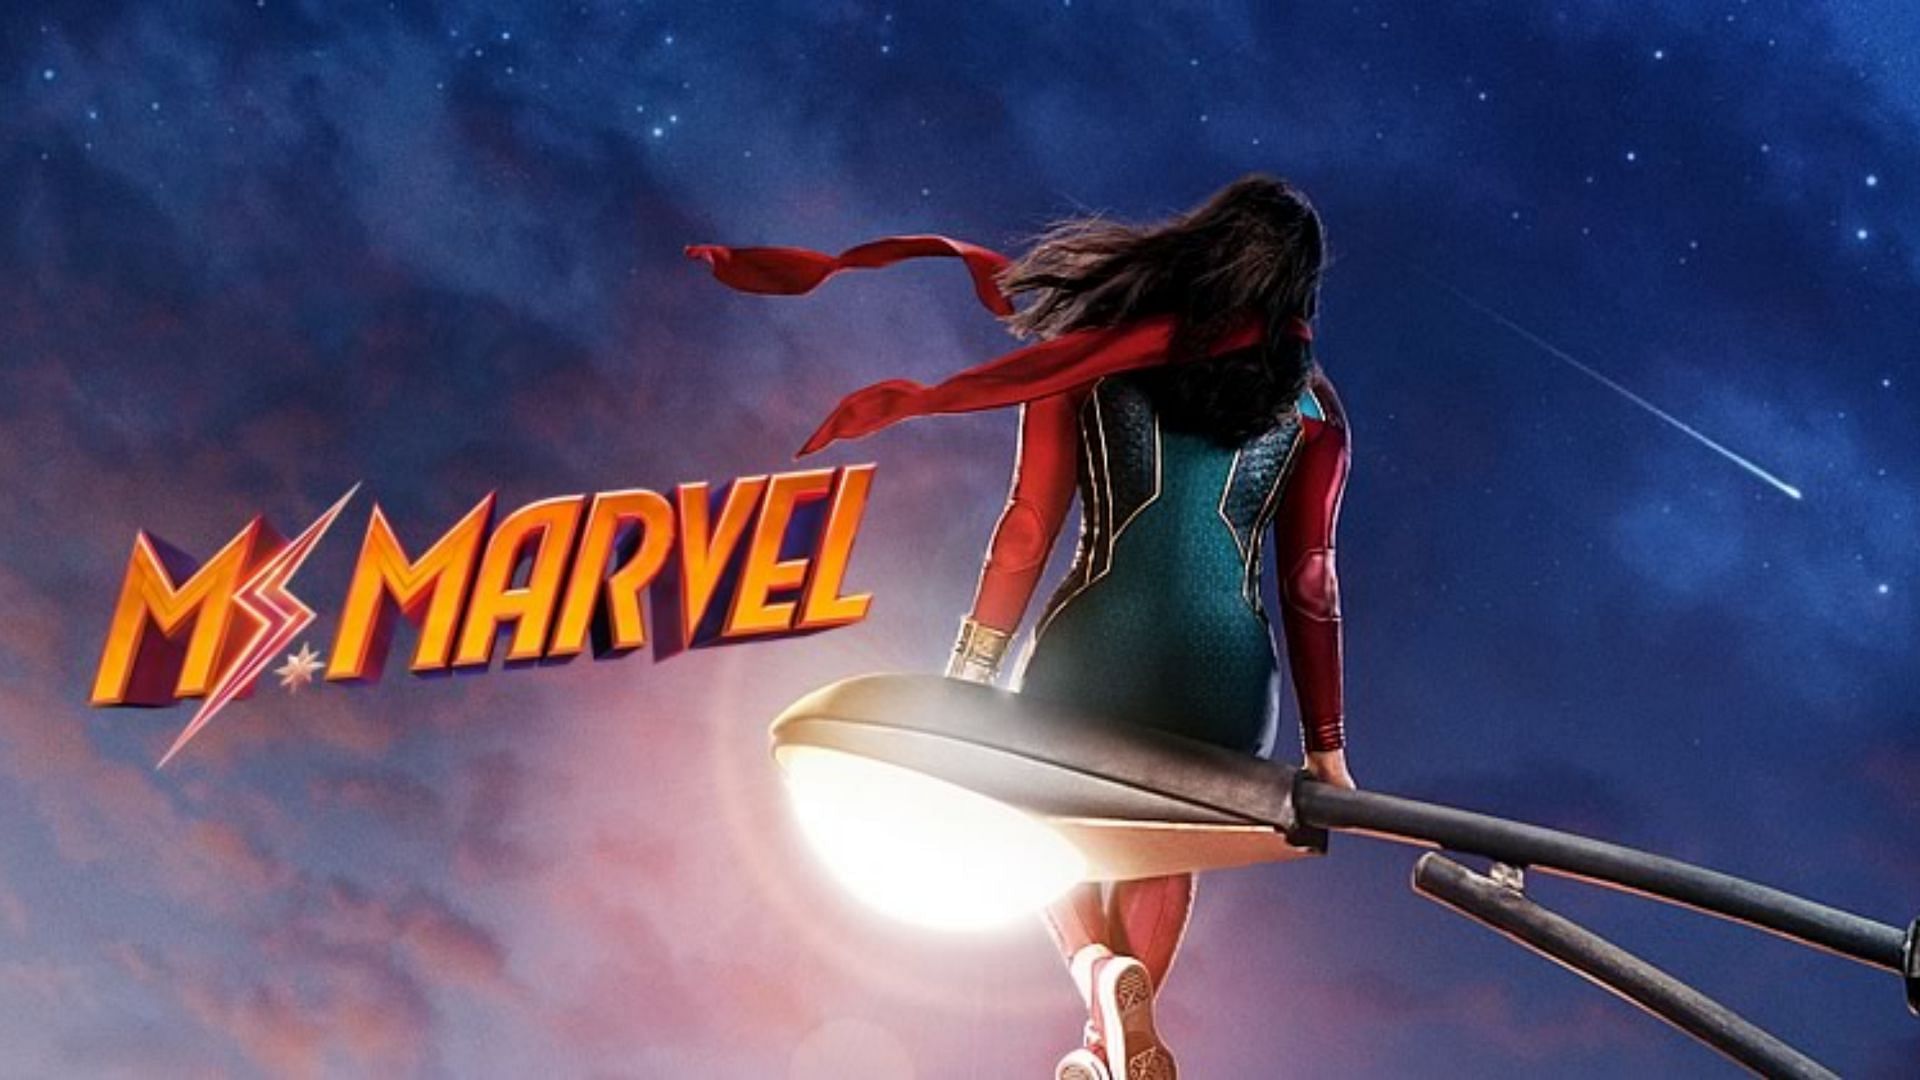 Ms. Marvel (Image via Disney Plus/Marvel Studios)